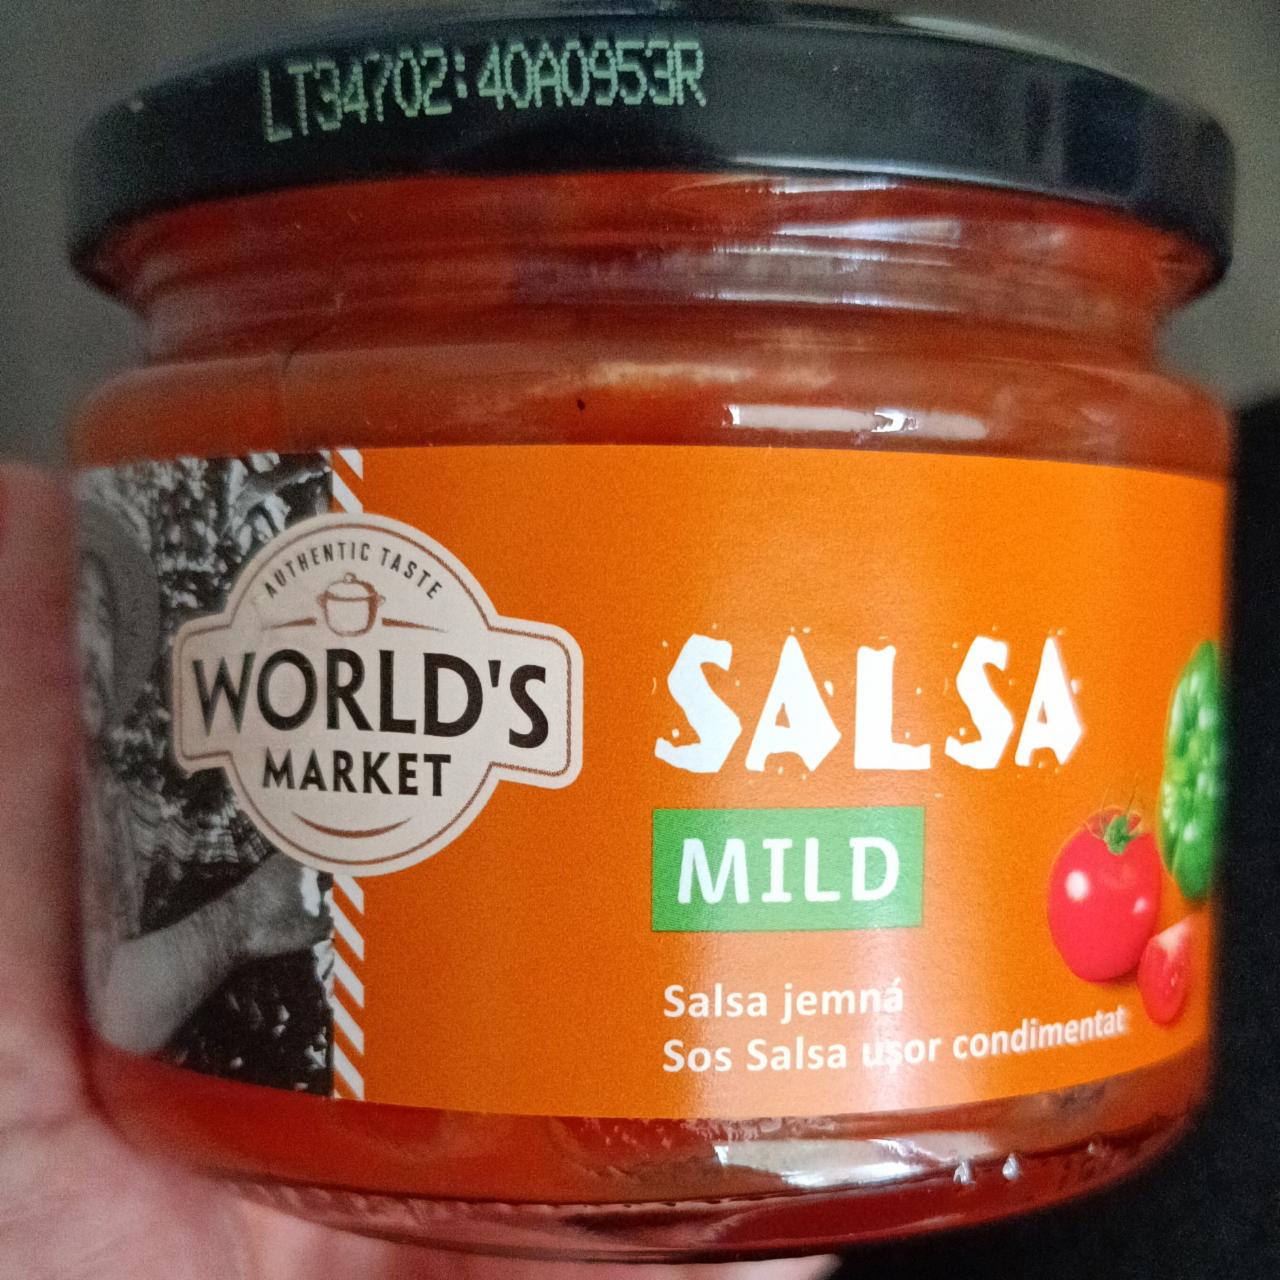 Fotografie - Salsa mild World's Market